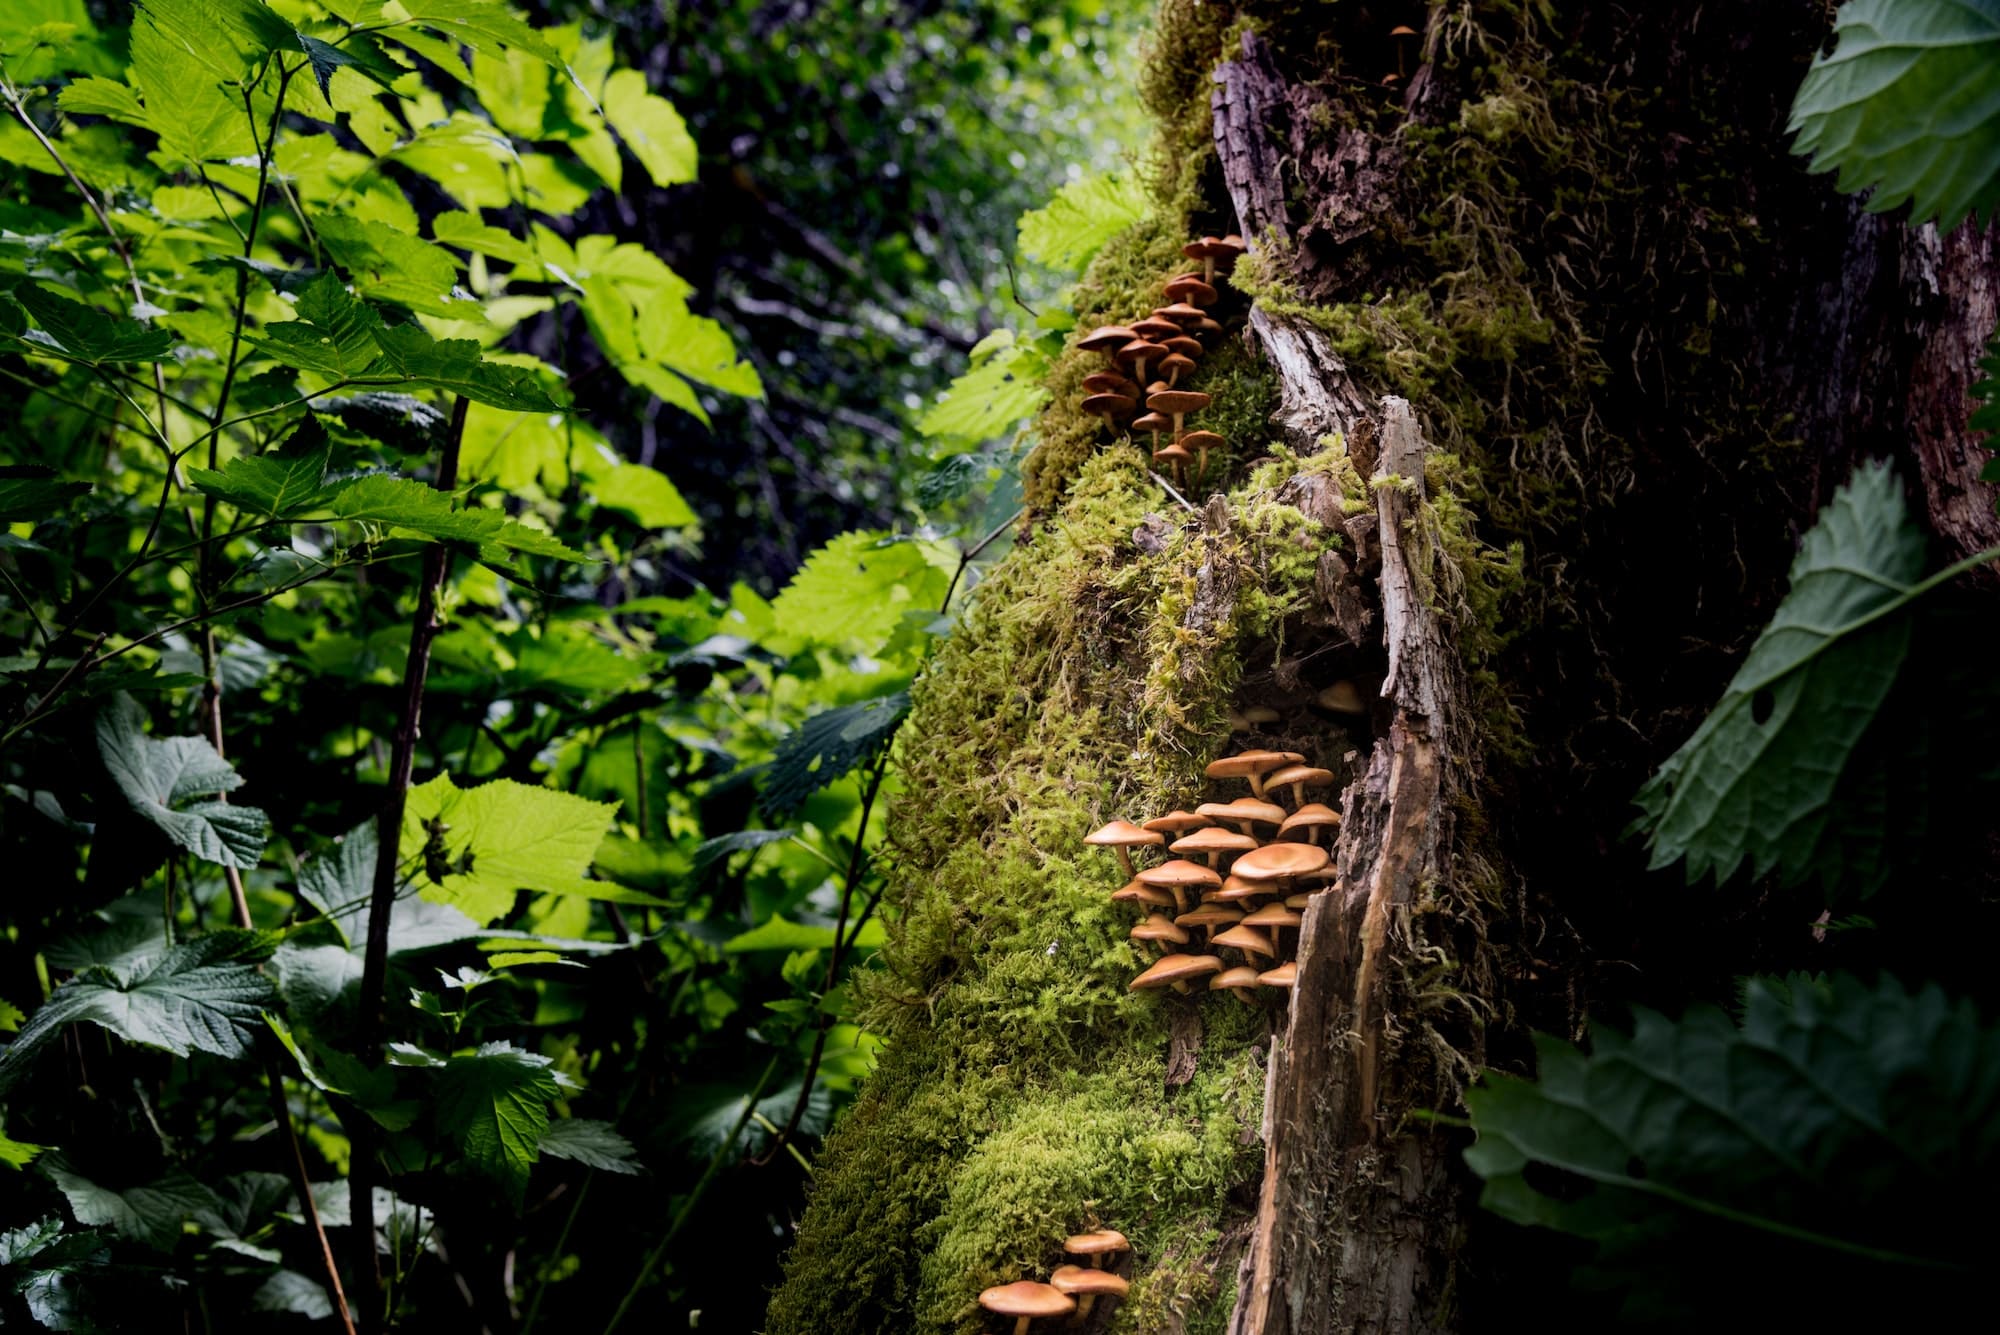 Wilde Pilzkolonie in einem Regenwald im pazifischen Nordwesten. RLTheis